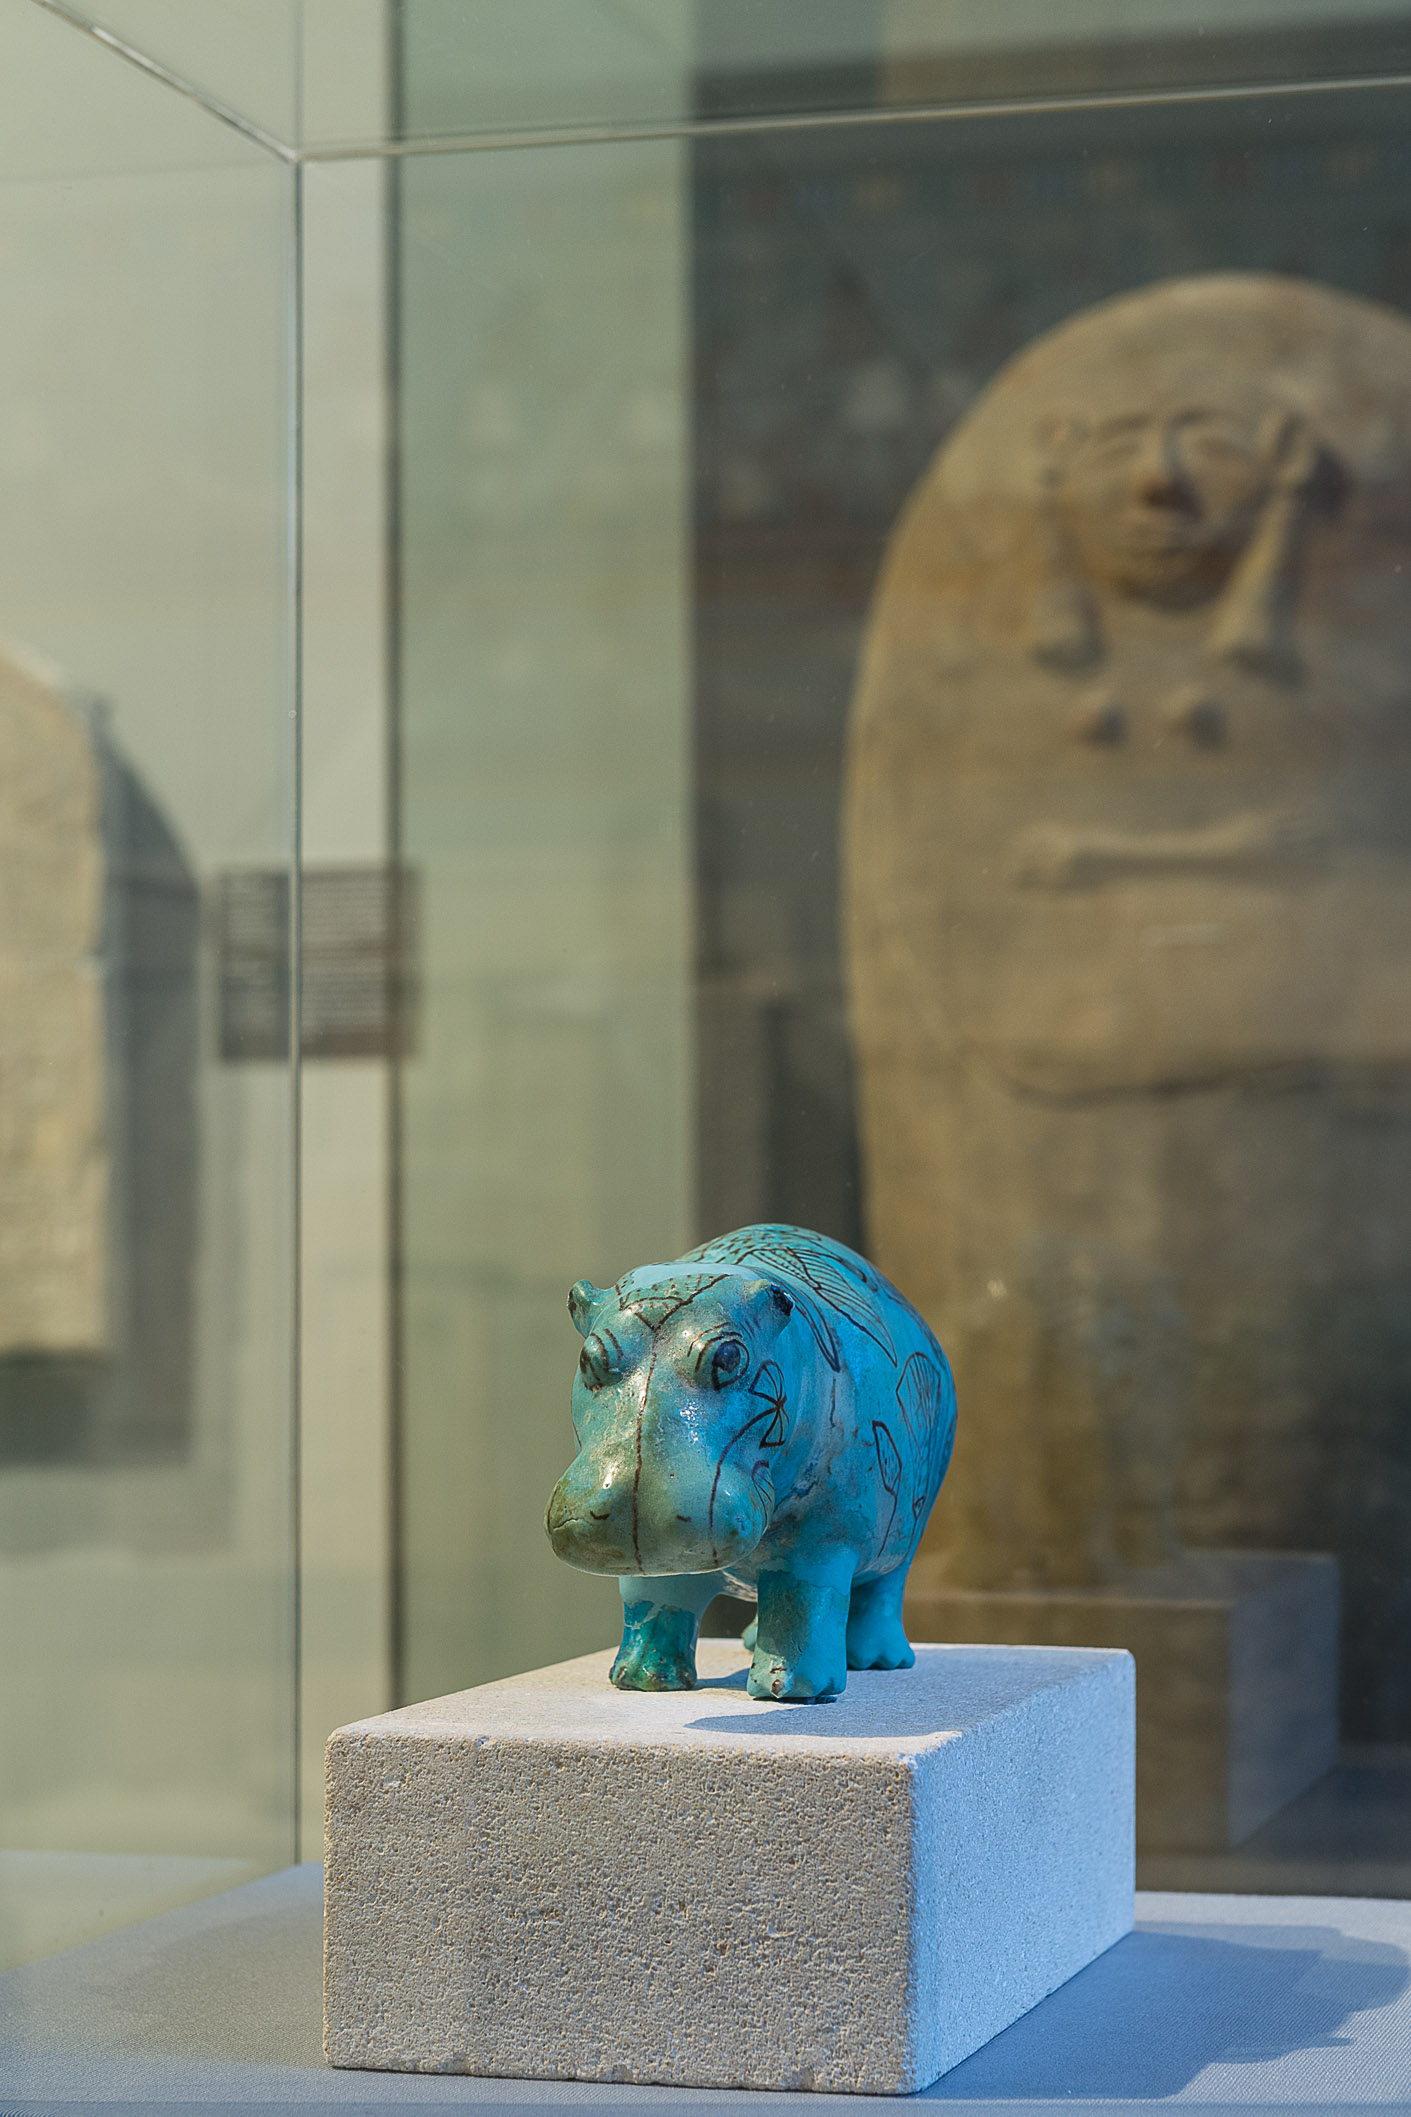 Hippopotamus by Unknown Artist - c. 2000 BC Kunsthistorisches Museum